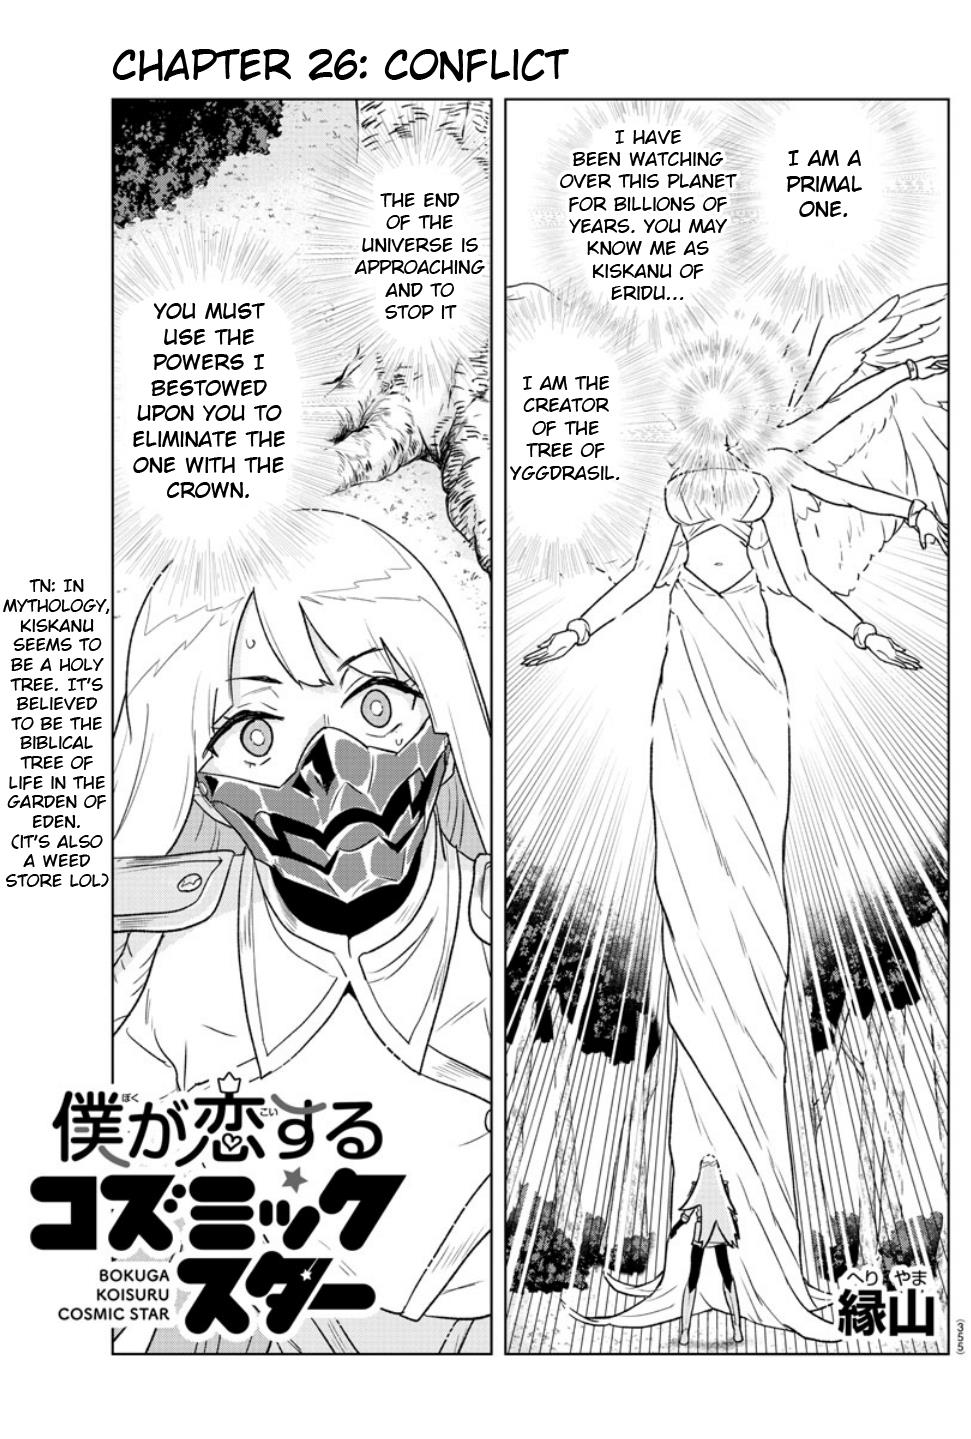 Boku Ga Koisuru Cosmic Star - Page 1